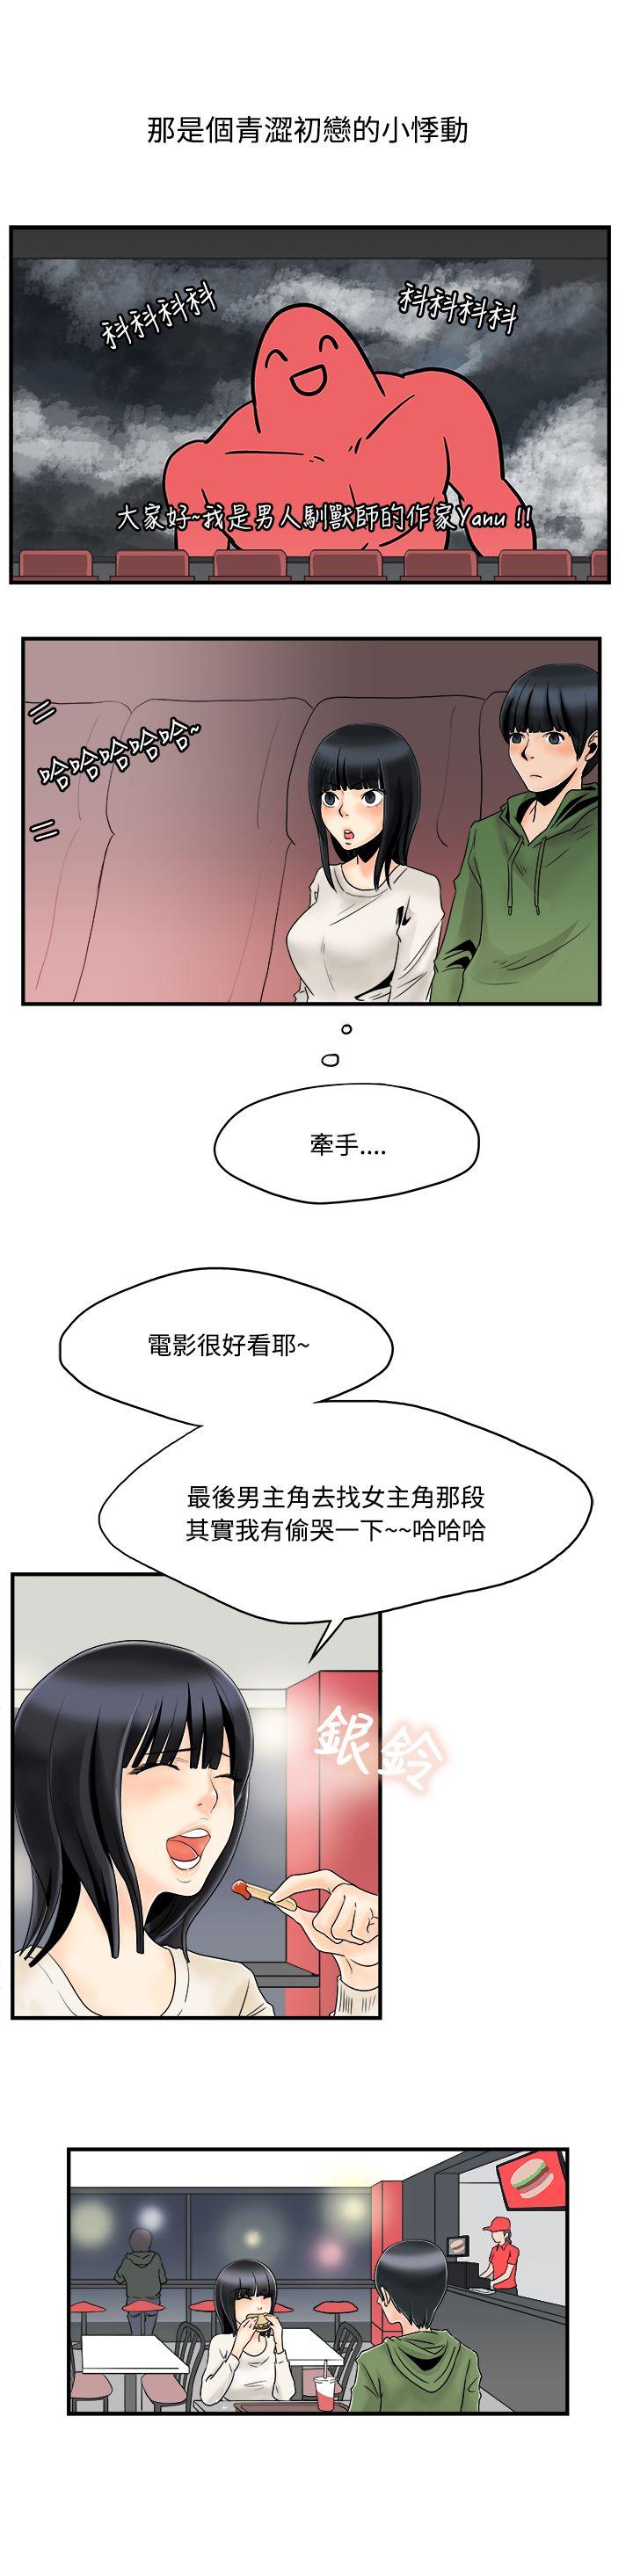 韩国污漫画 男人馴獸師 第5话 3